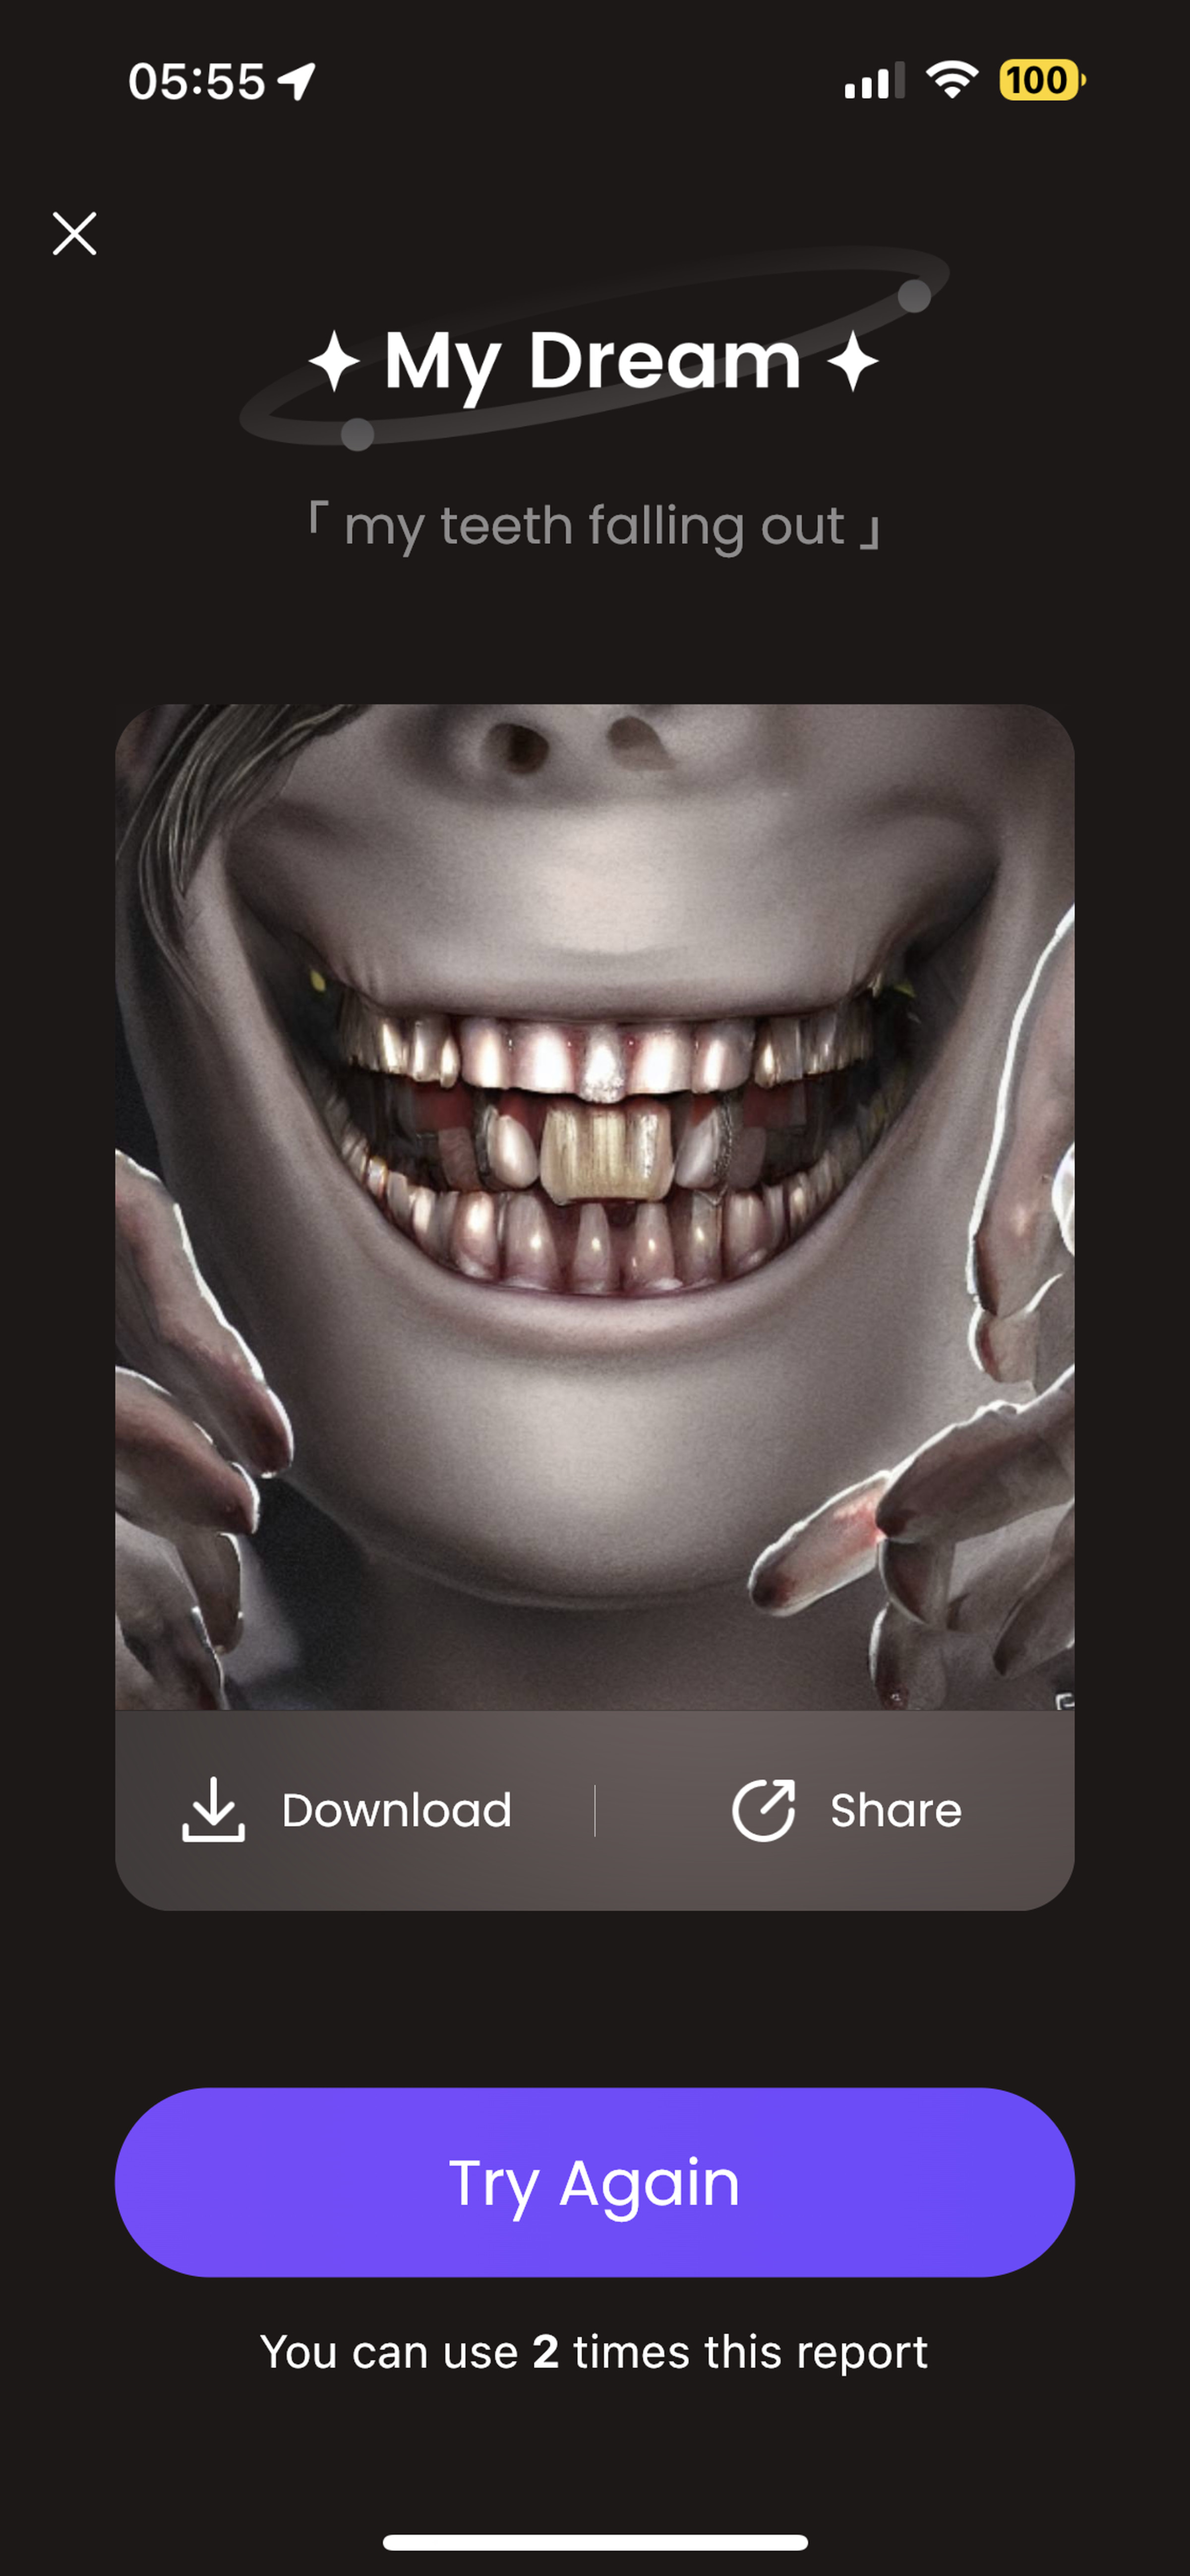 "Dişlerim dökülüyor" istemine yanıt olarak oluşturulan iki sıra dişe sahip ürkütücü bir yüz resmi.